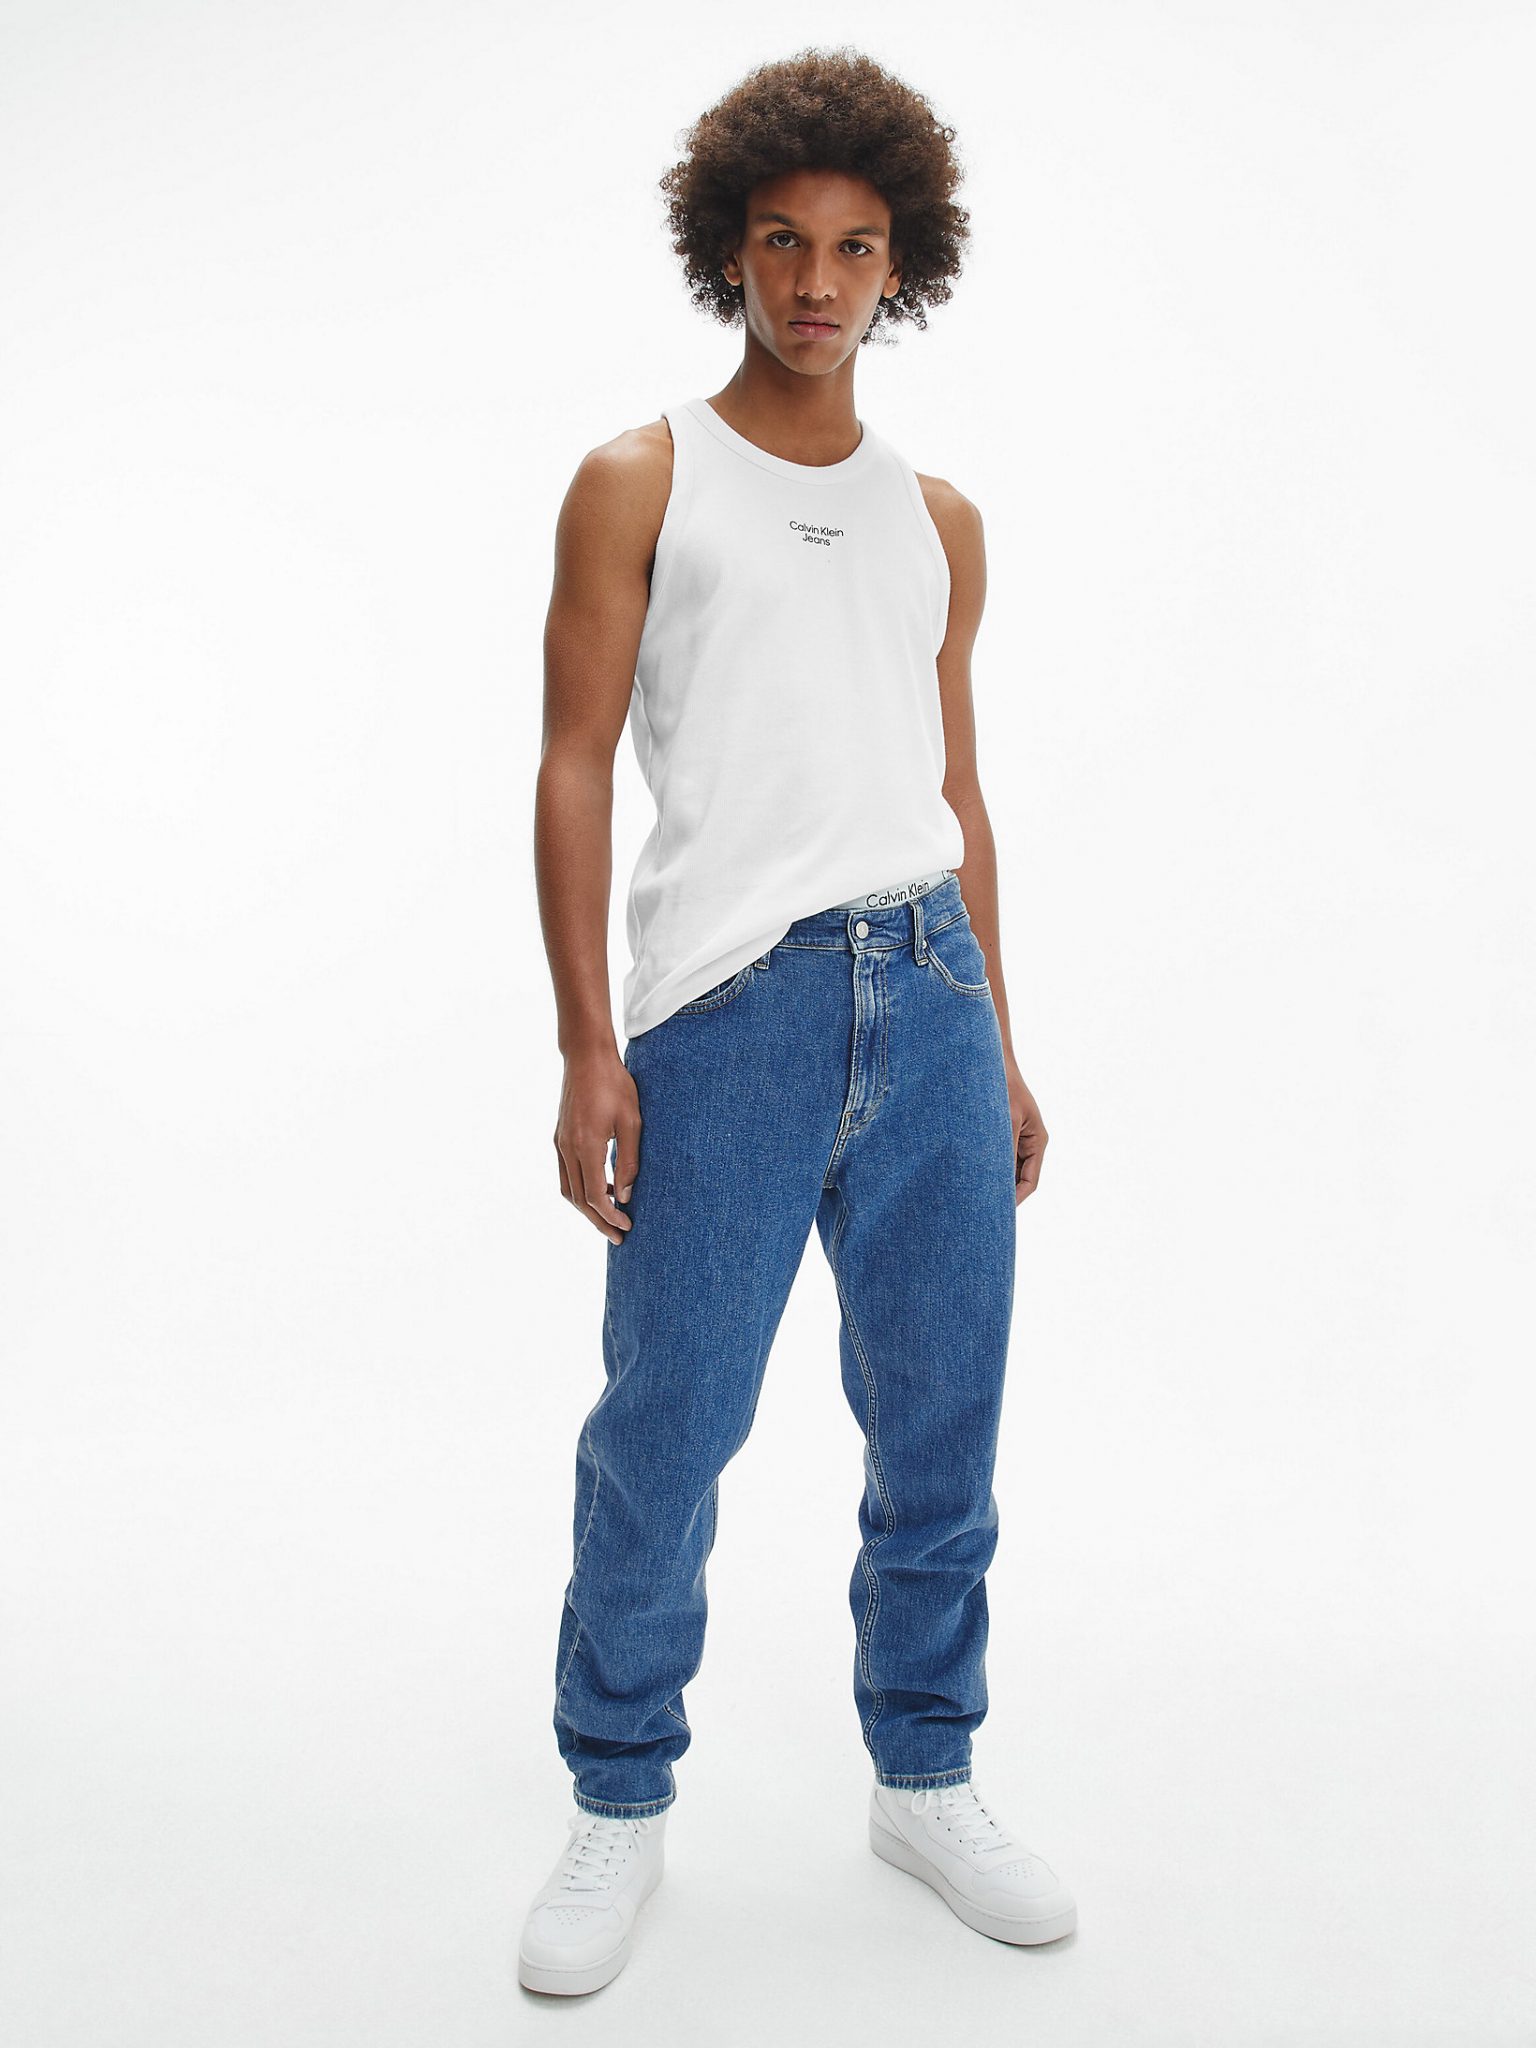 Calvin Klein Slim Rib Tank Top in White for Men